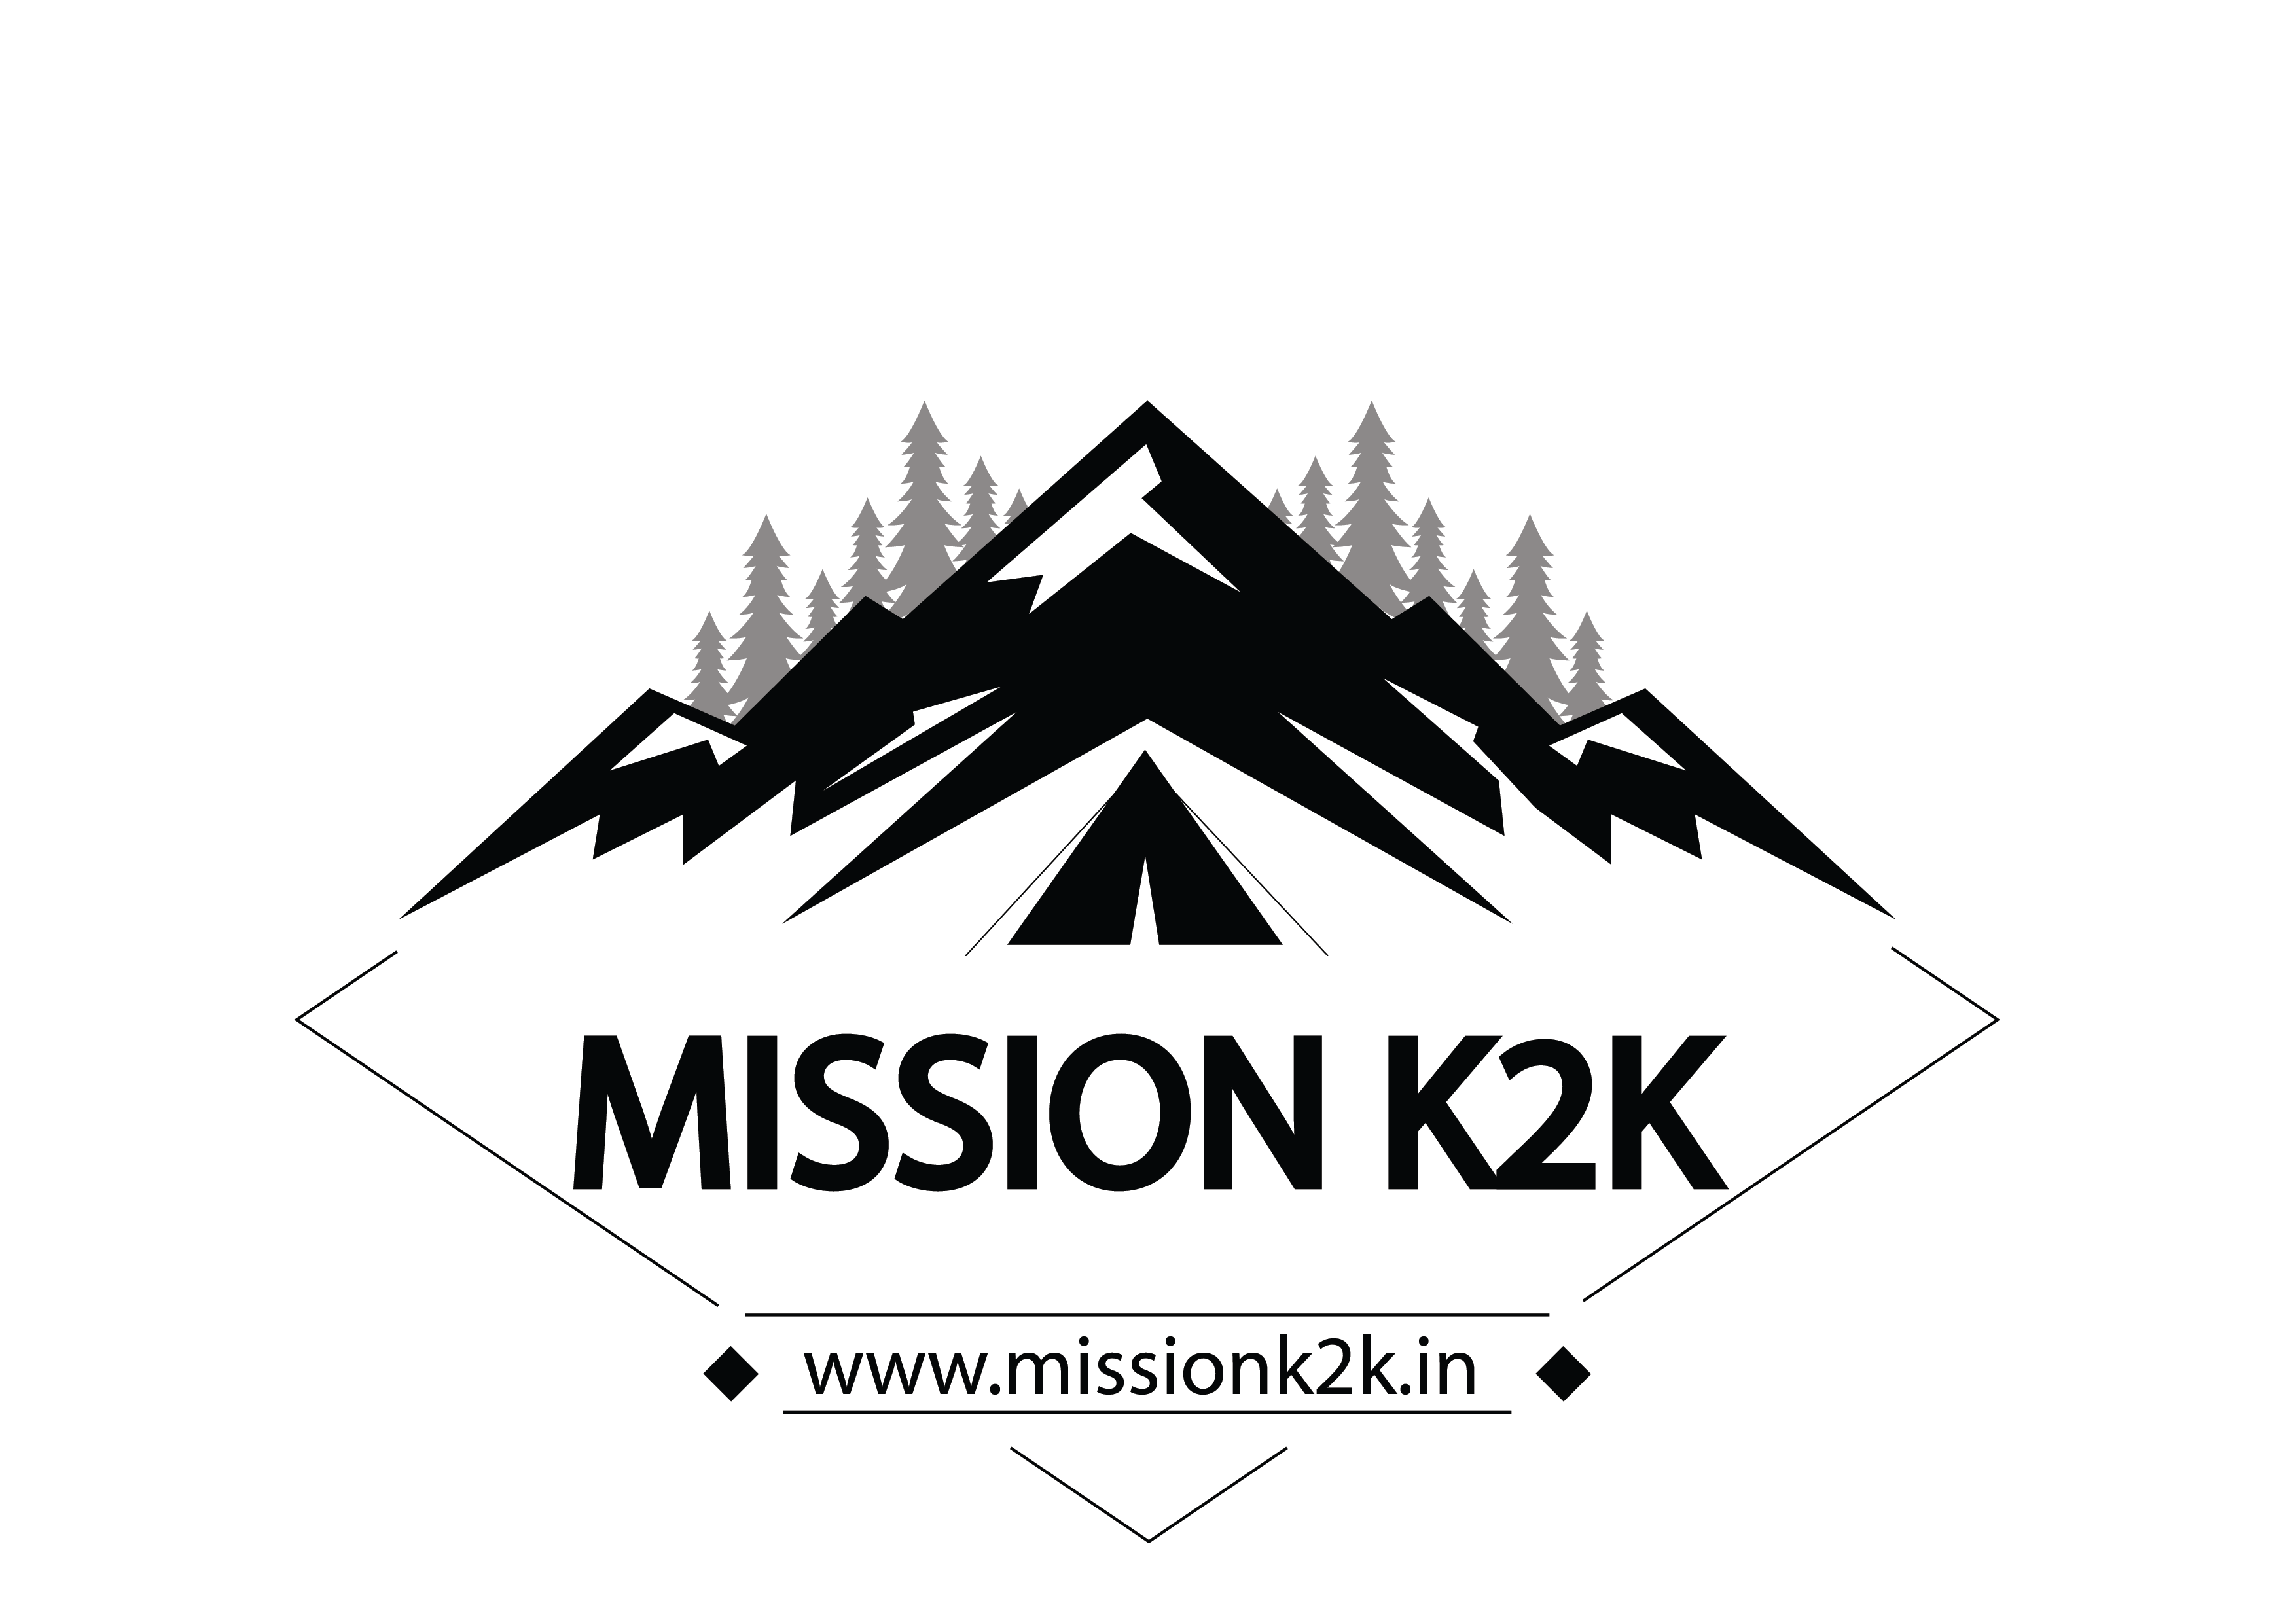 Mission K2k